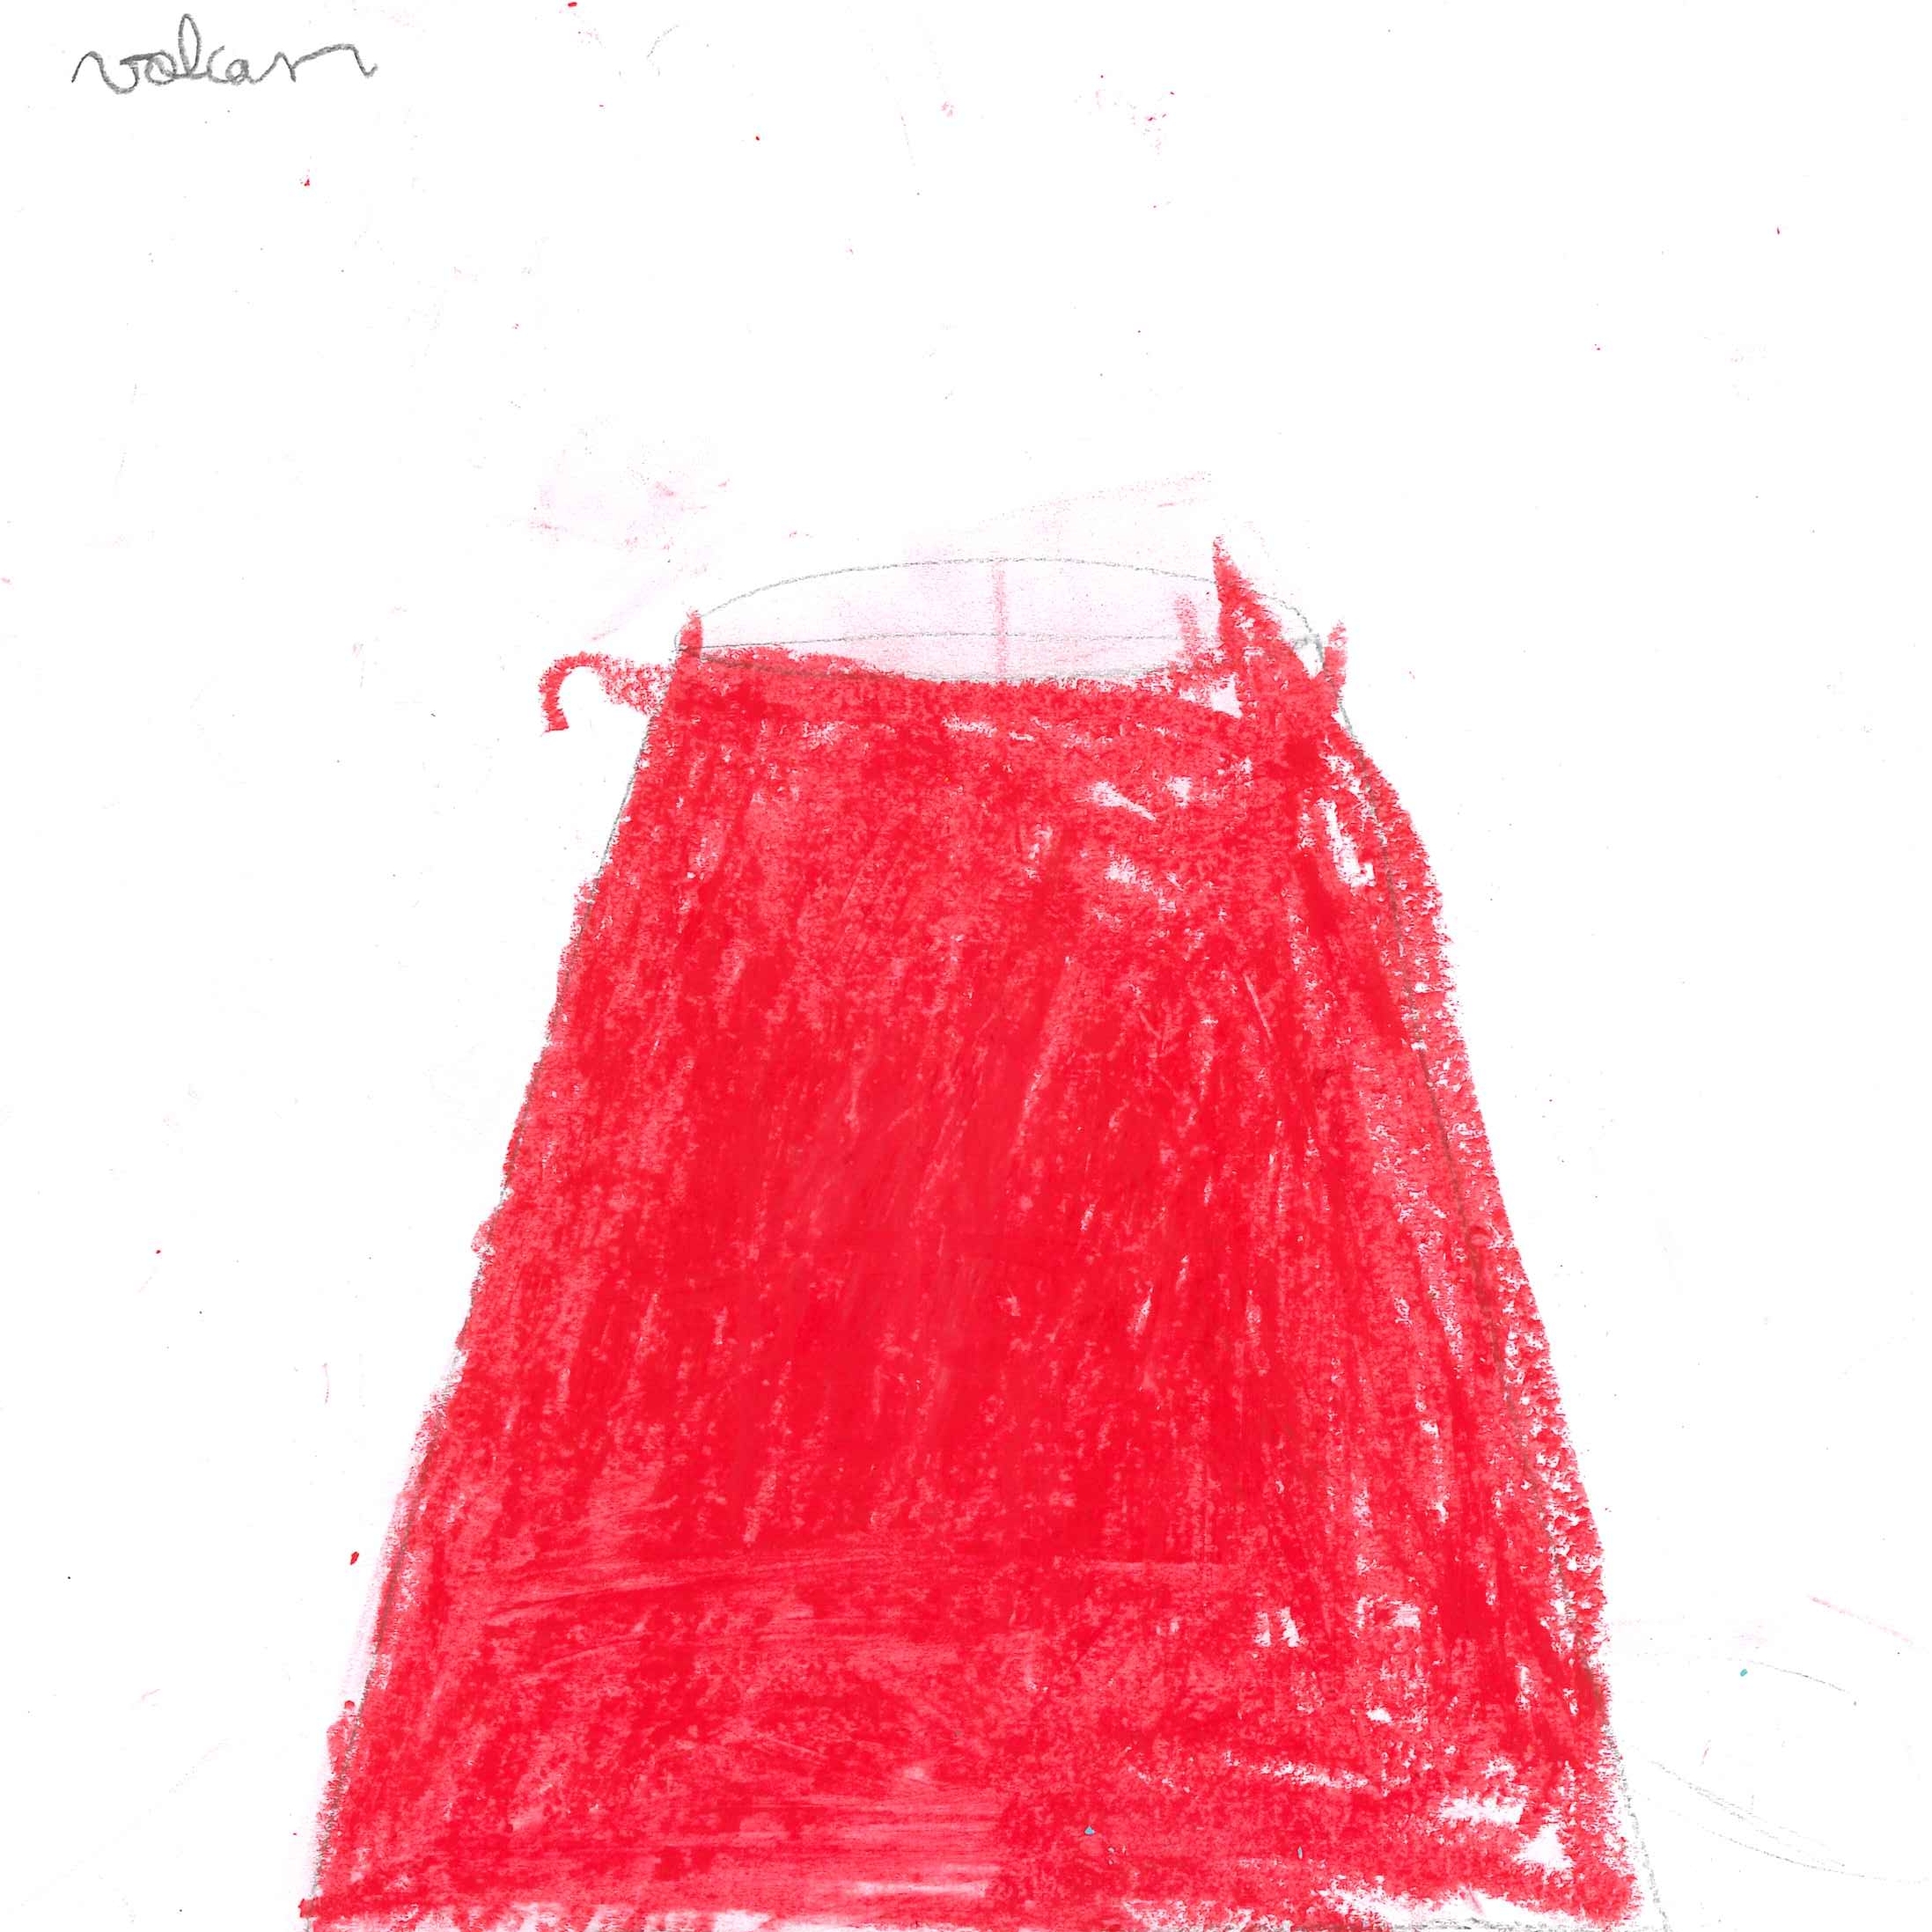 Dessin de Mounir (7 ans). Mot: VolcanTechnique: Pastels.